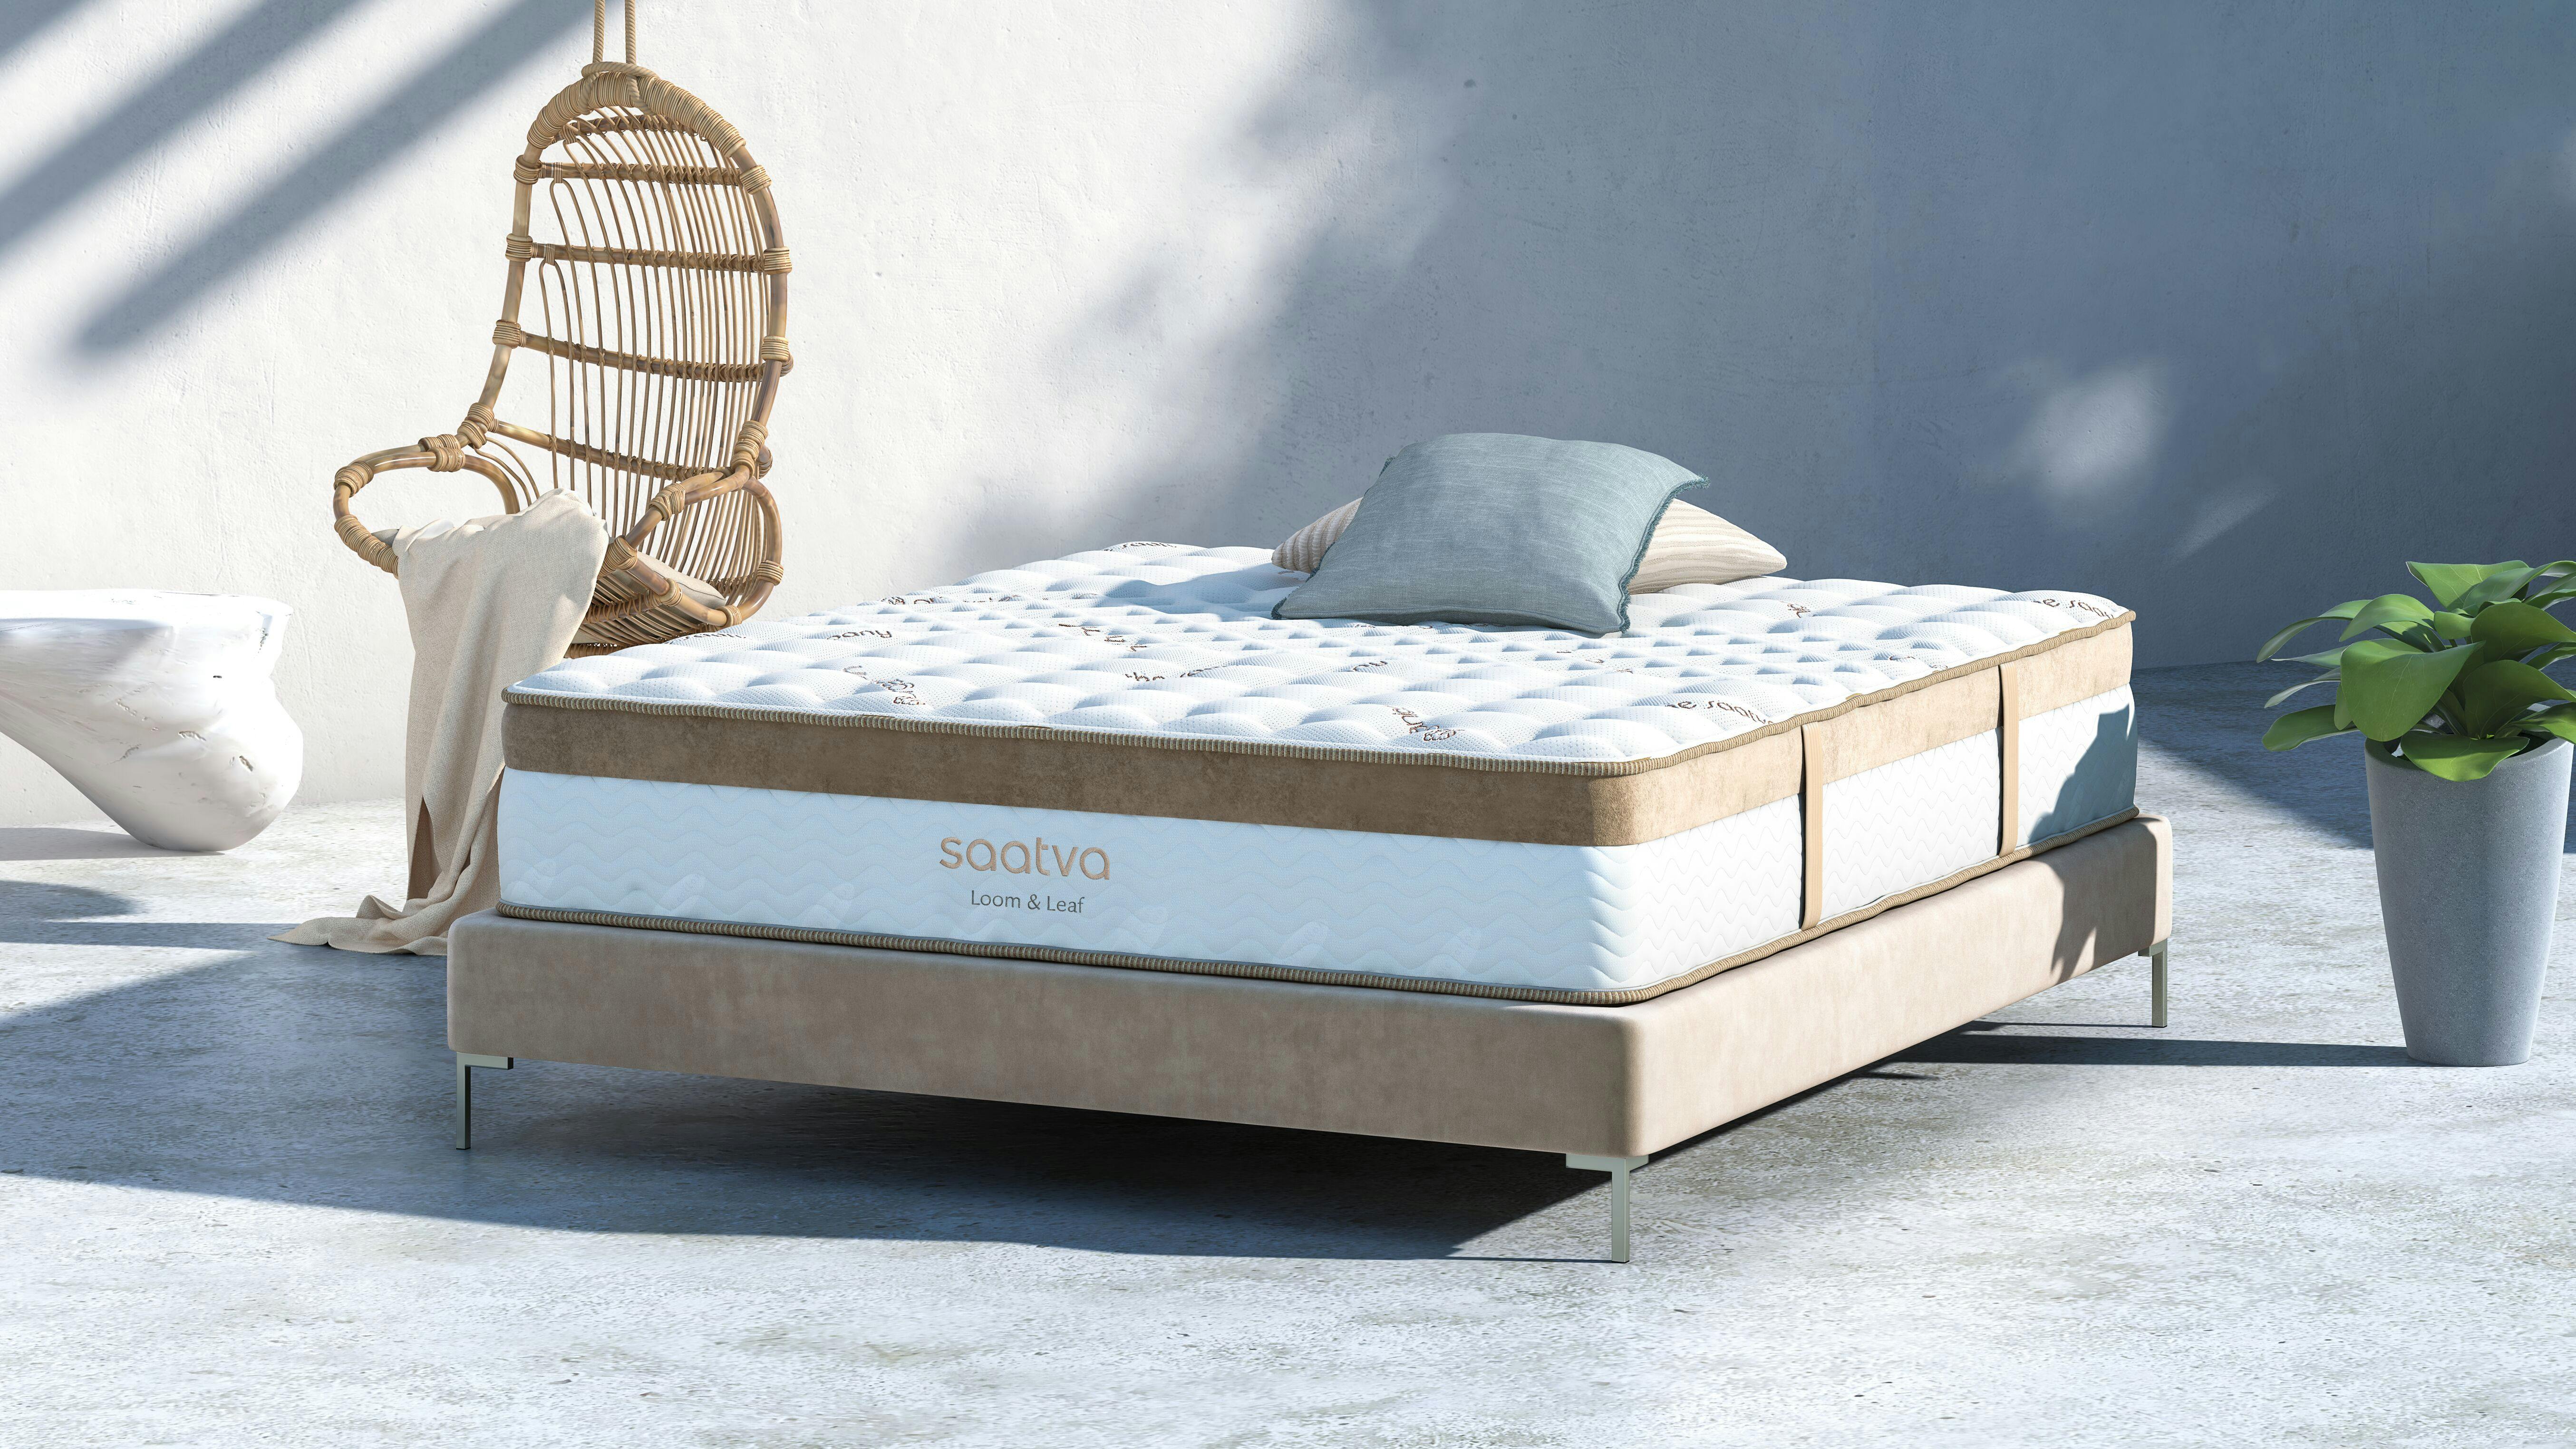 saatva loom and leaf mattress luxury firm